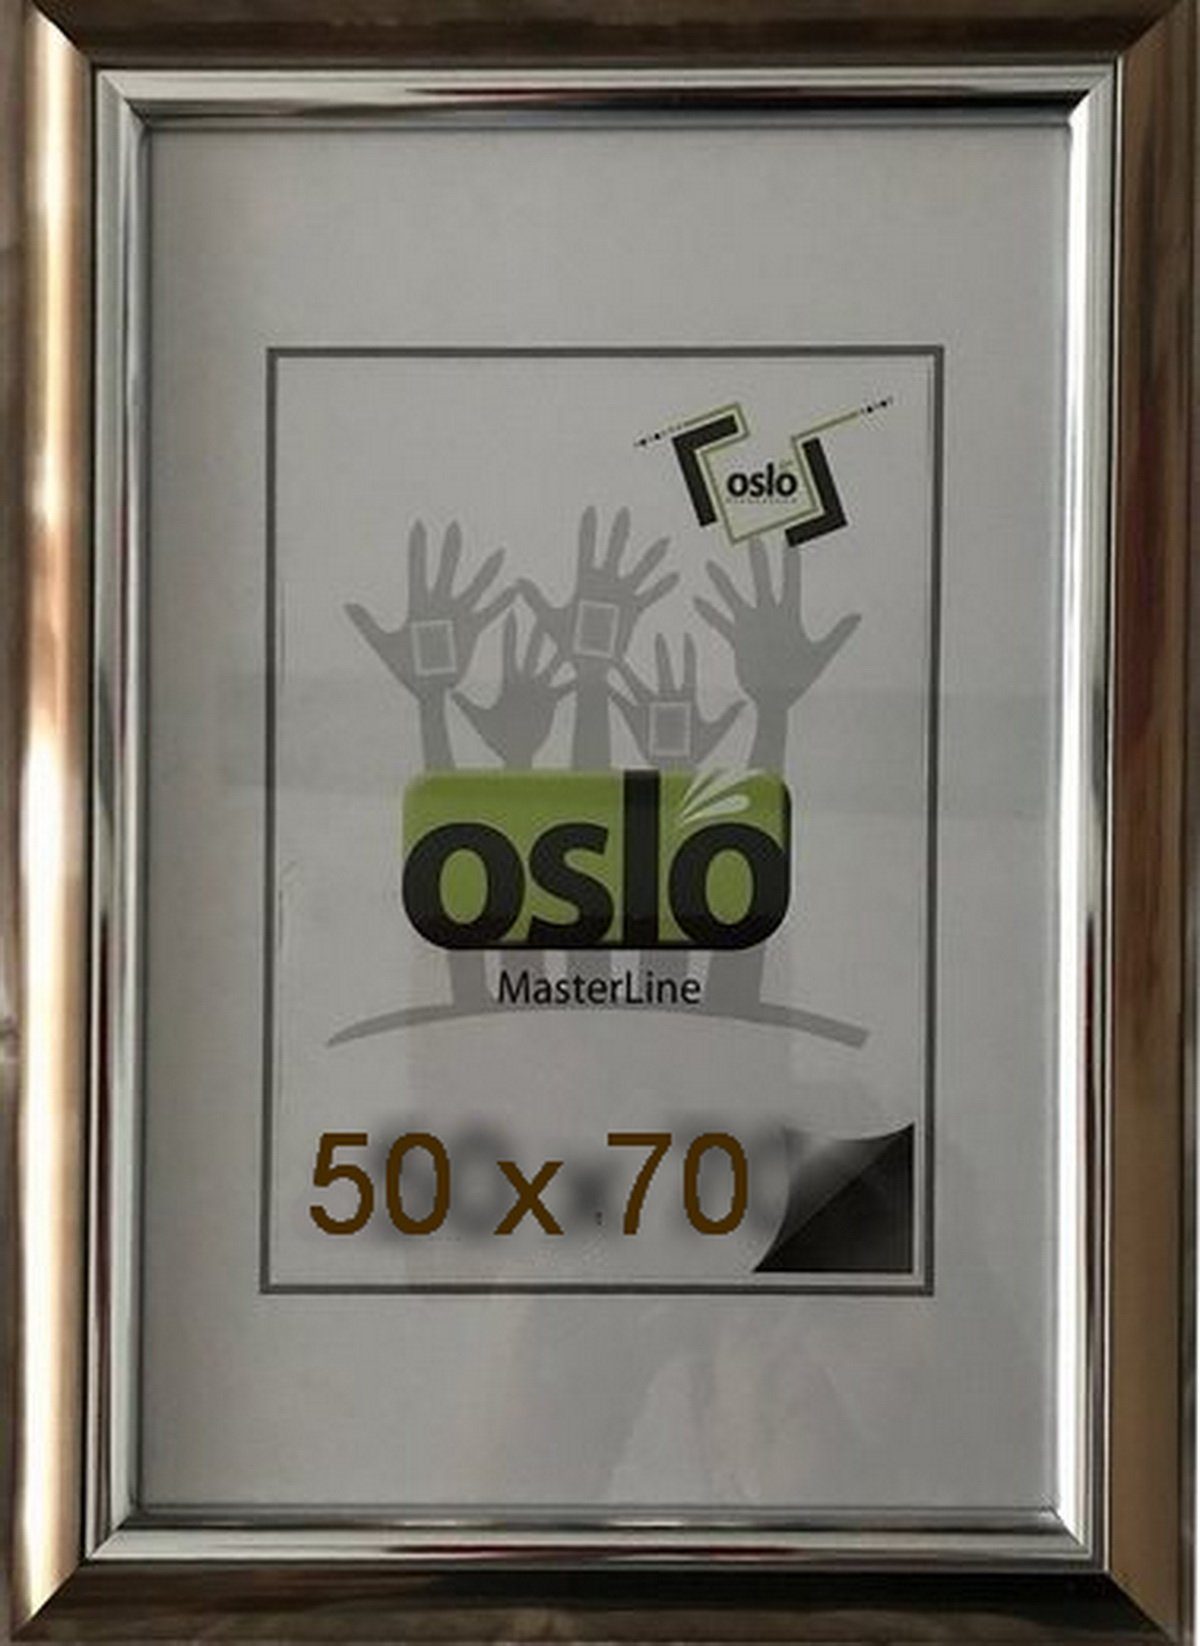 Oslo MasterLine Einzelrahmen Bilderrahmen Kunststoff Innenleiste glänzend Echtglas Becker+Hach FSC, 50x70 bronze - Innenleiste silber glänzend